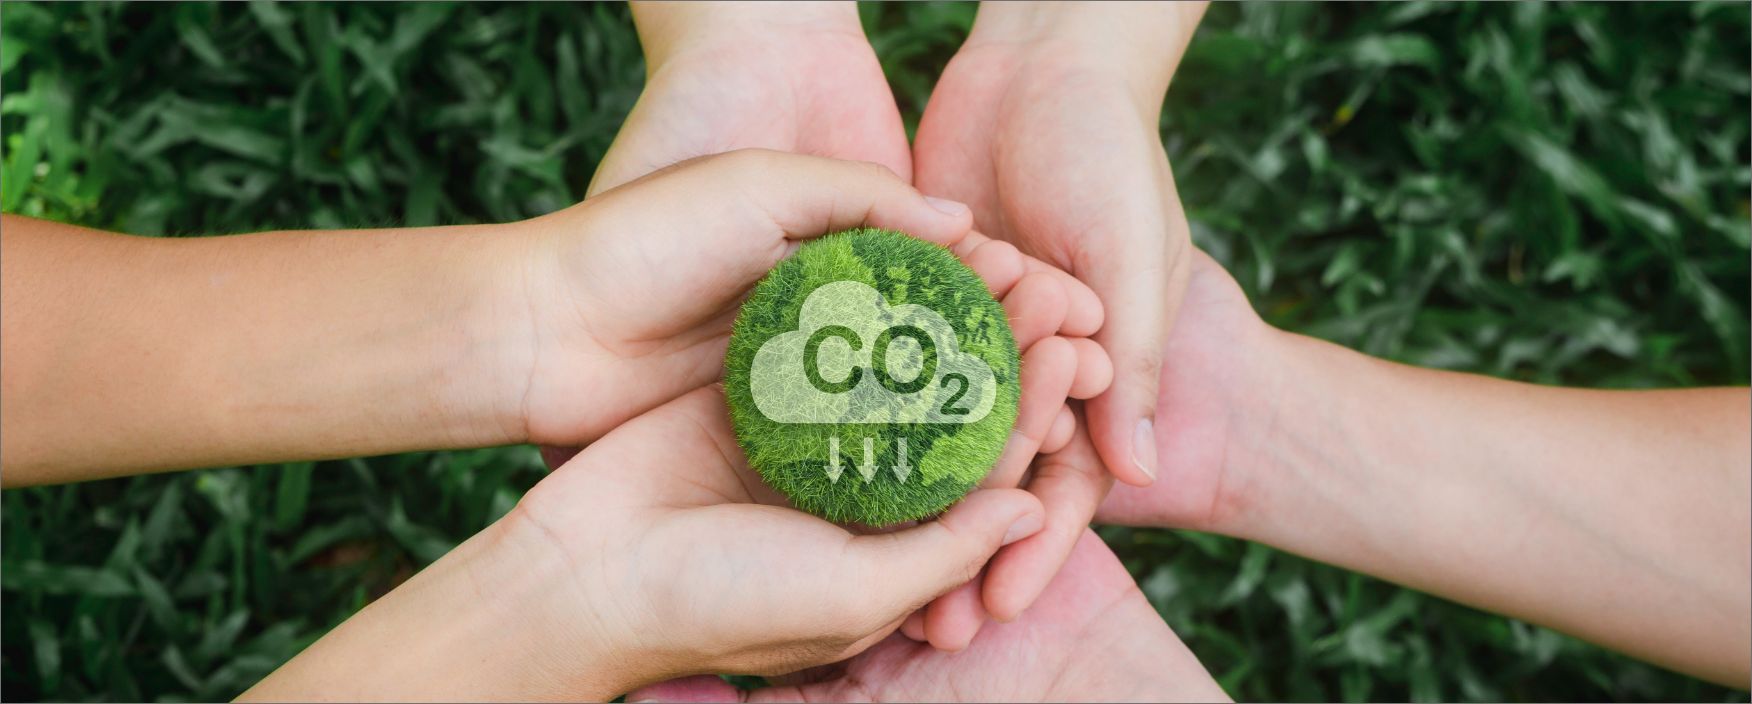 Hände halten ein Stück Gras mit CO2 Symbol